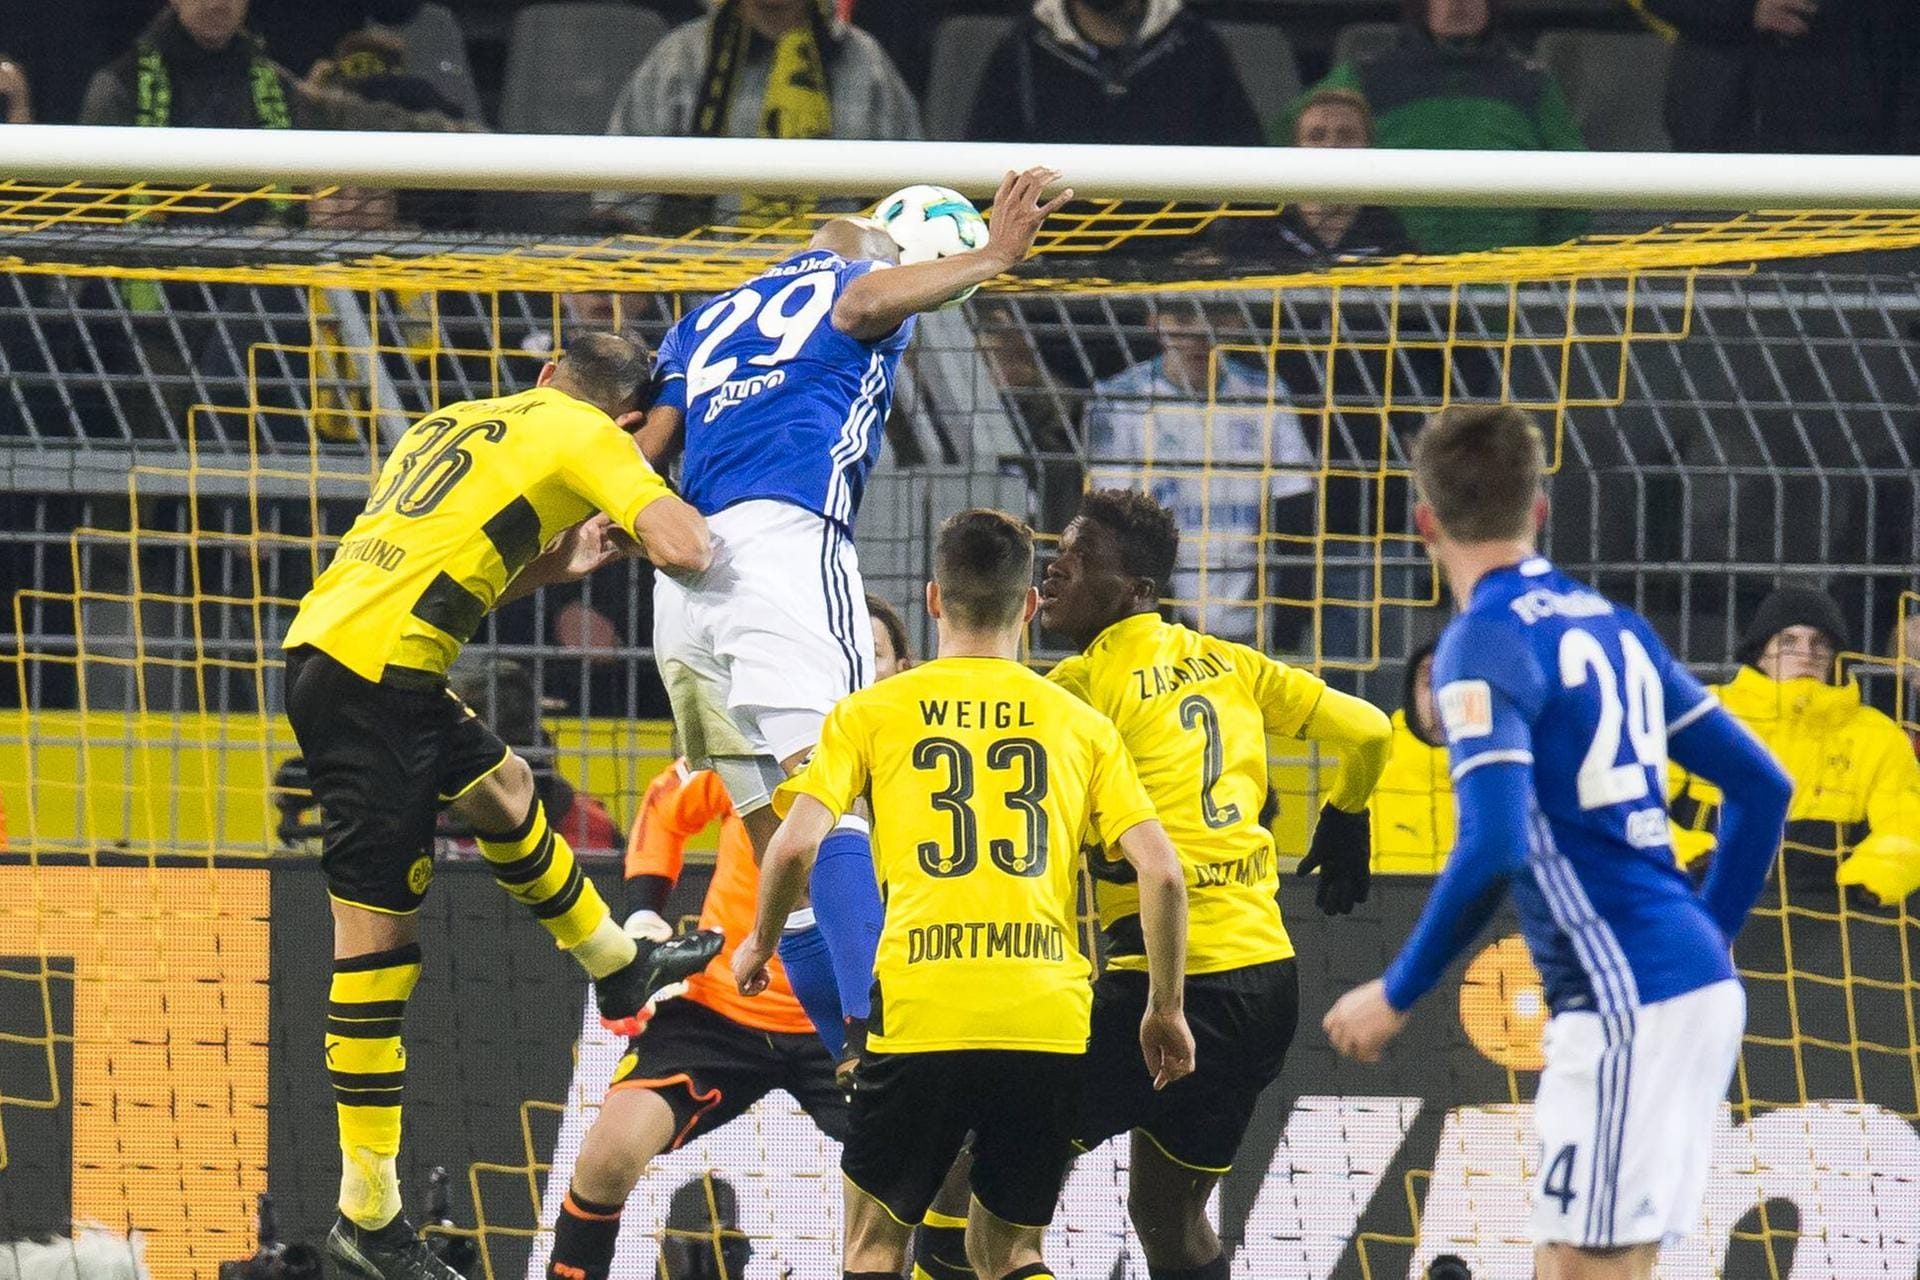 Revierderby Dortmund gegen Schalke: In der vierten Minute der Nachspielzeit köpft Schalkes Abwehrboss Naldo (m./Nr.29) - umringt von drei BVB-Profis - den Ball zum 4:4-Ausgleich ins Tor. Dortmund führte zur Halbzeit bereits 4:0. Eine der unglaublichsten Aufholjagden in der Geschichte der Fußball-Bundesliga.